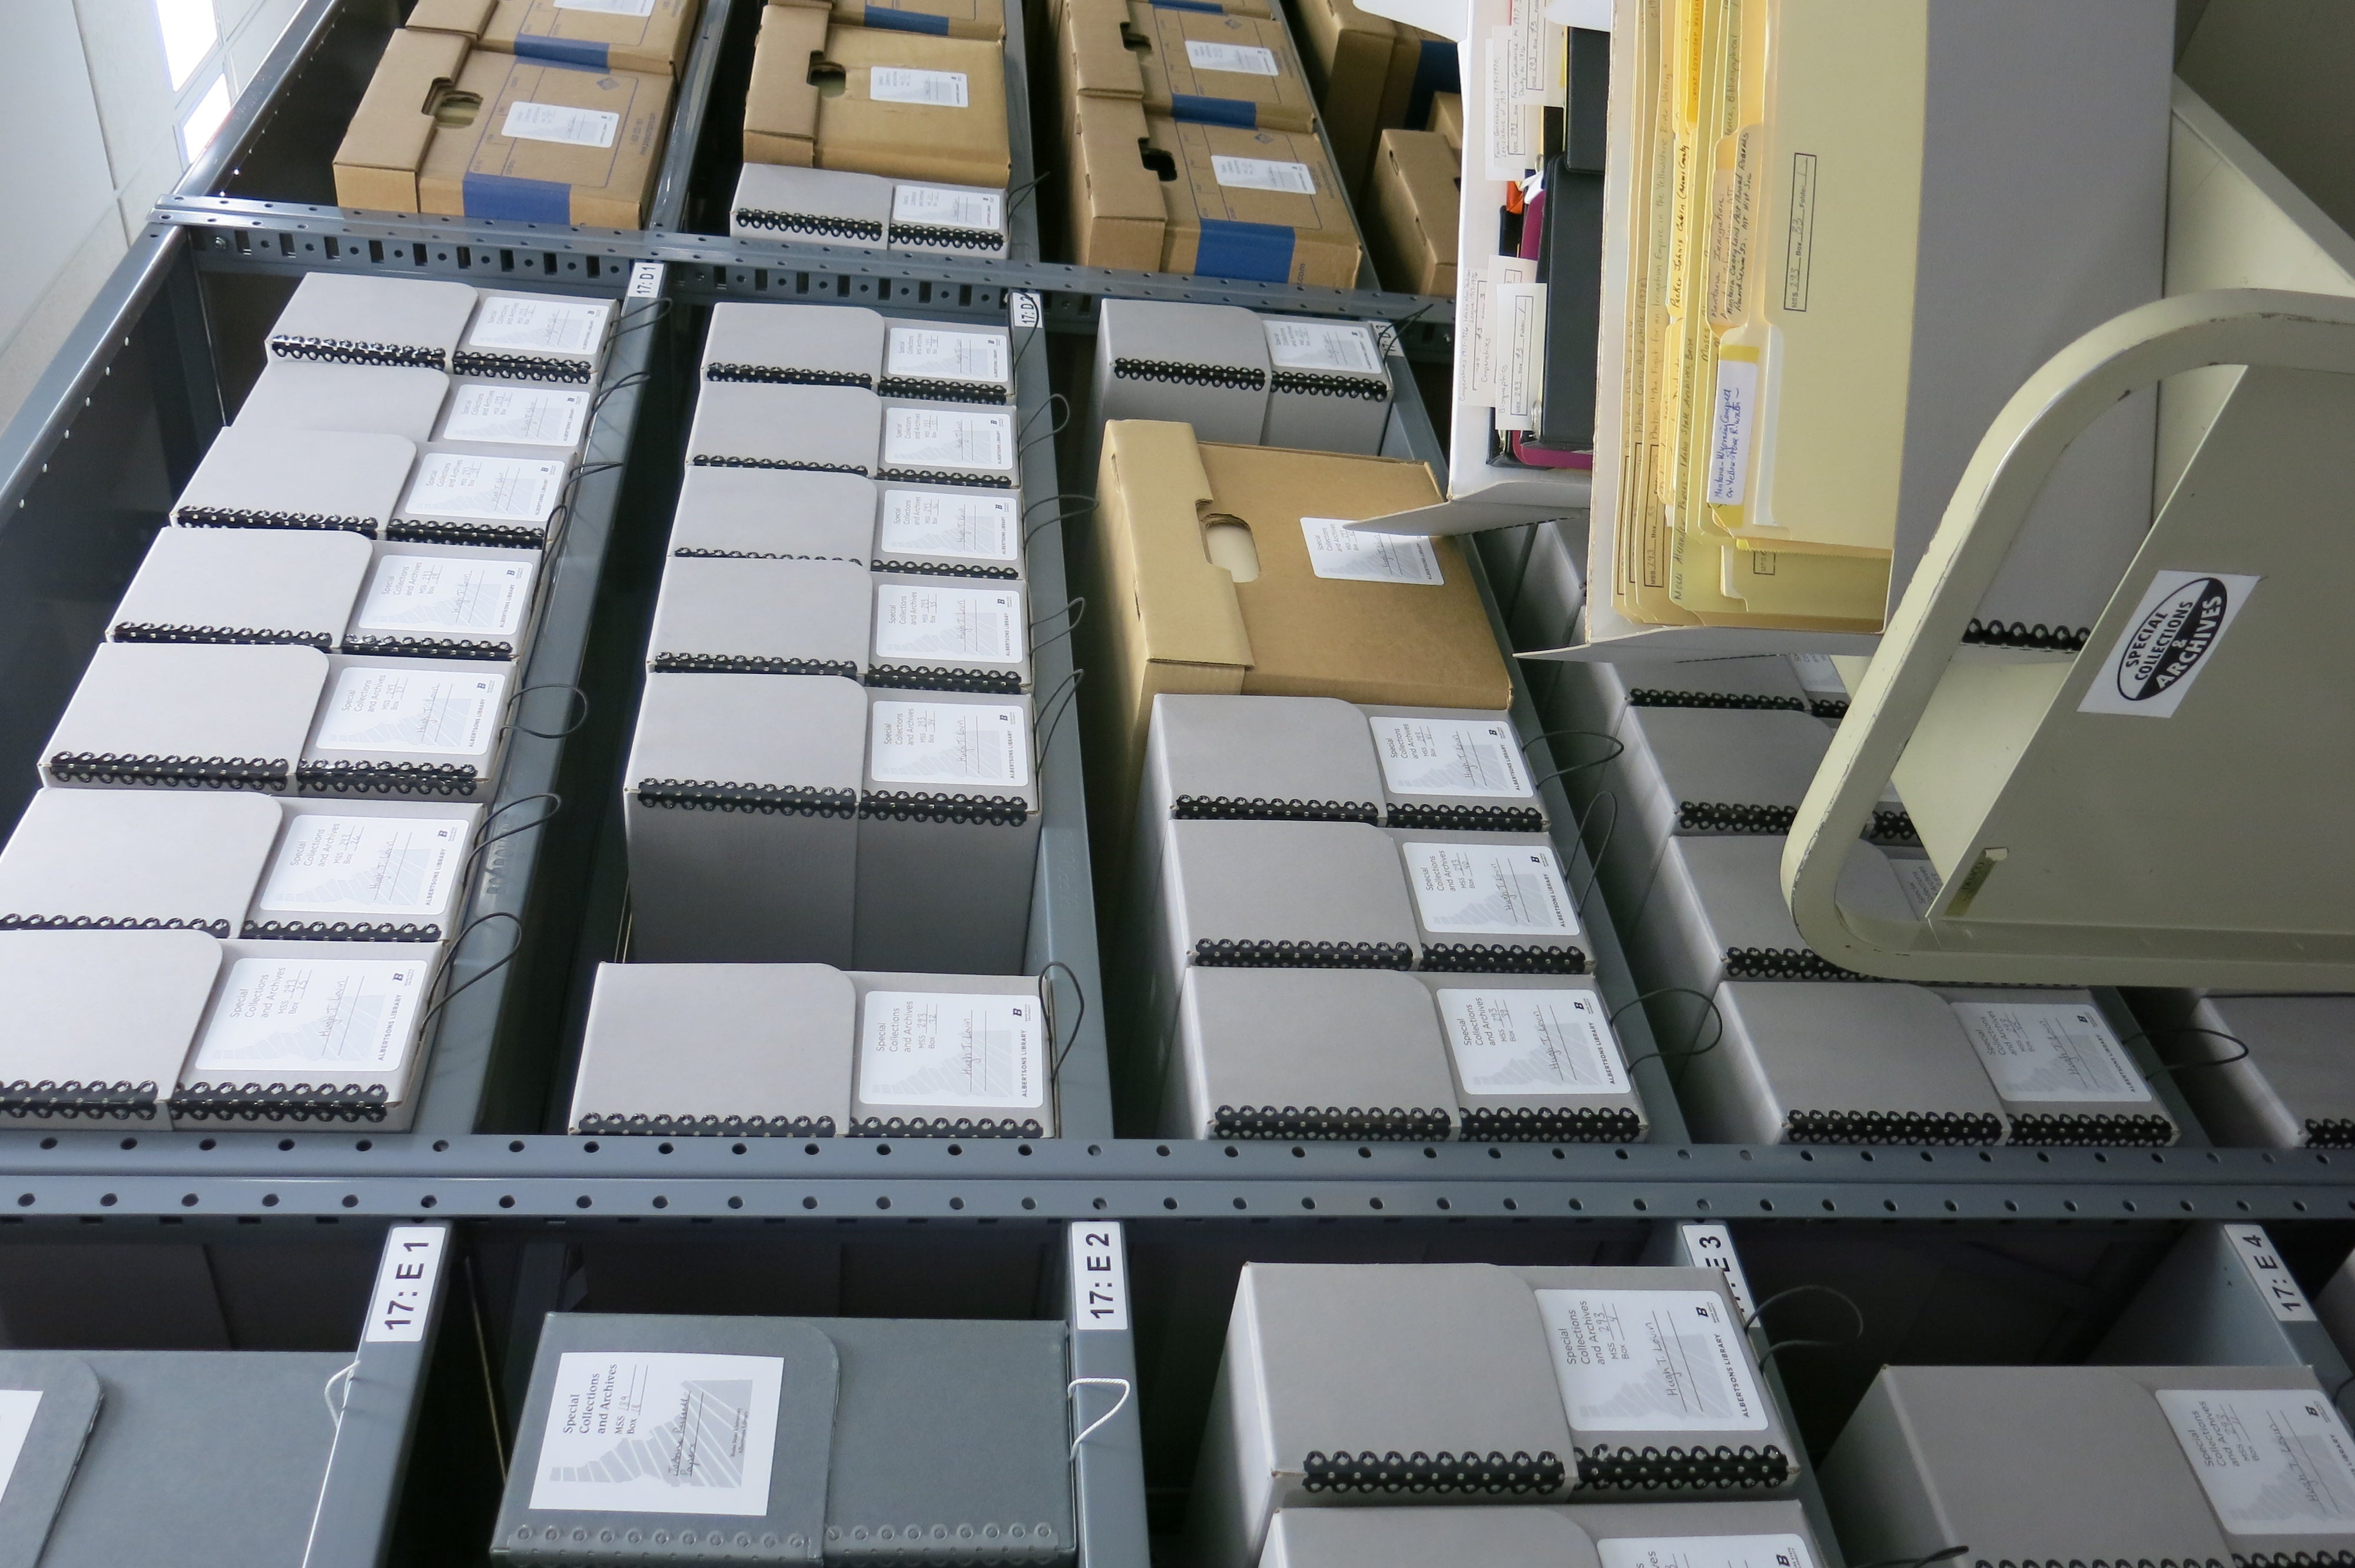 archival shelves full of boxes